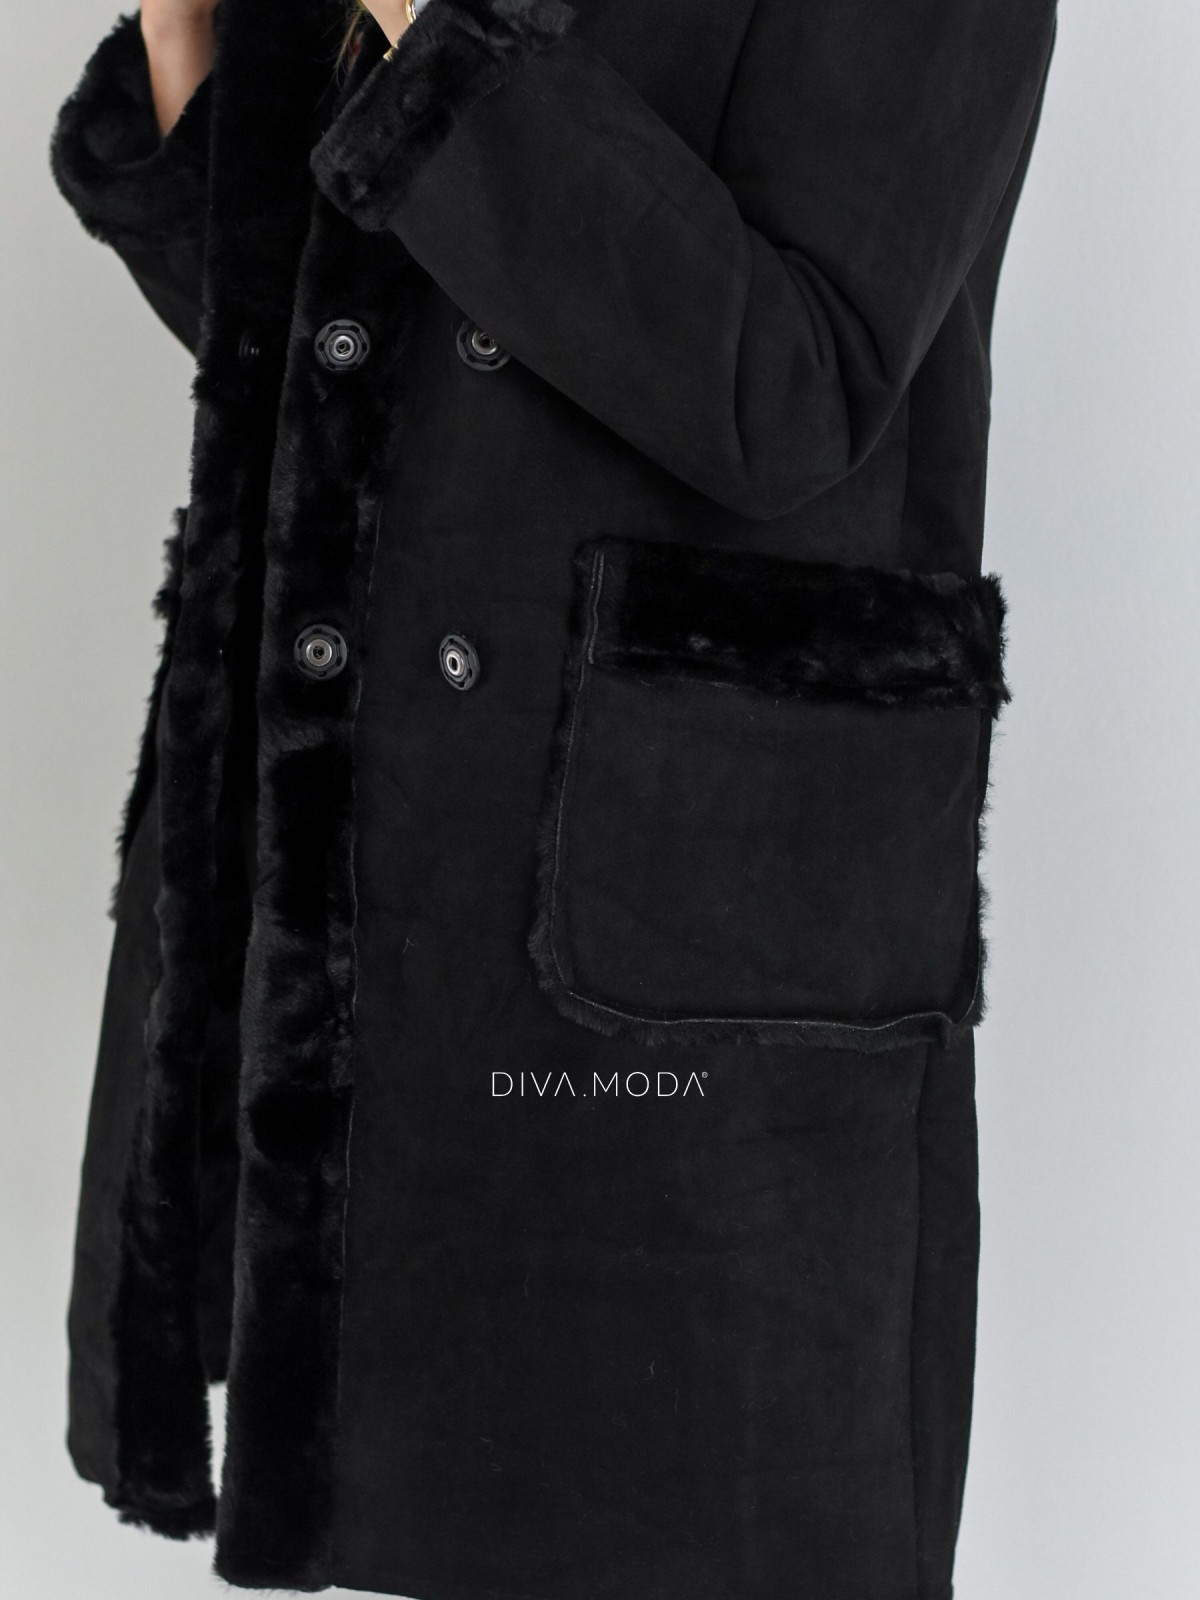 Kožešinový kabátek z broušené koženky s kapucí černý P 40